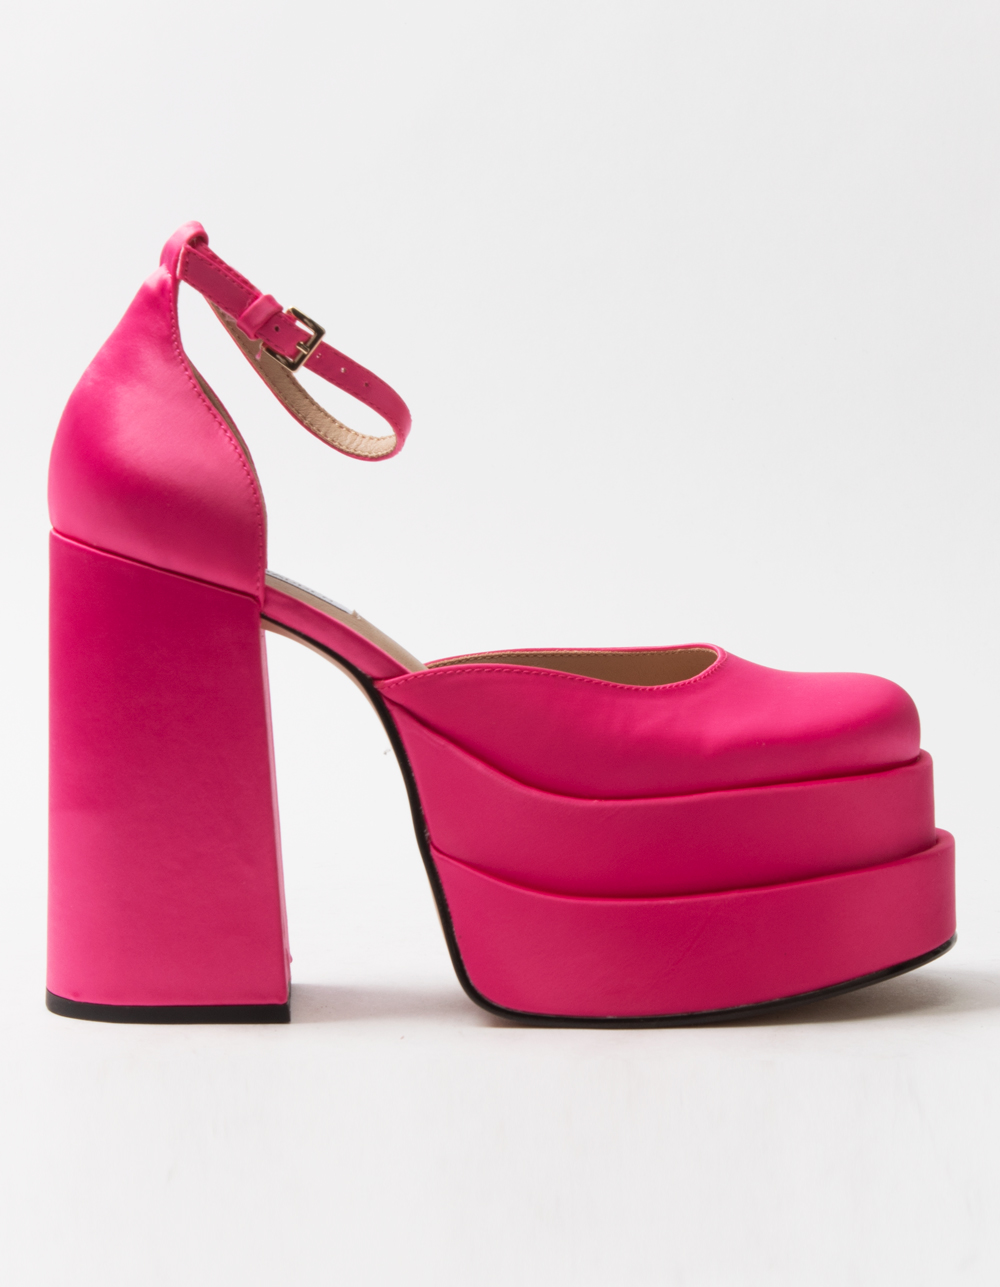 STEVEN MADDEN Charlize Satin Platform Heels - HOT PINK | Tillys